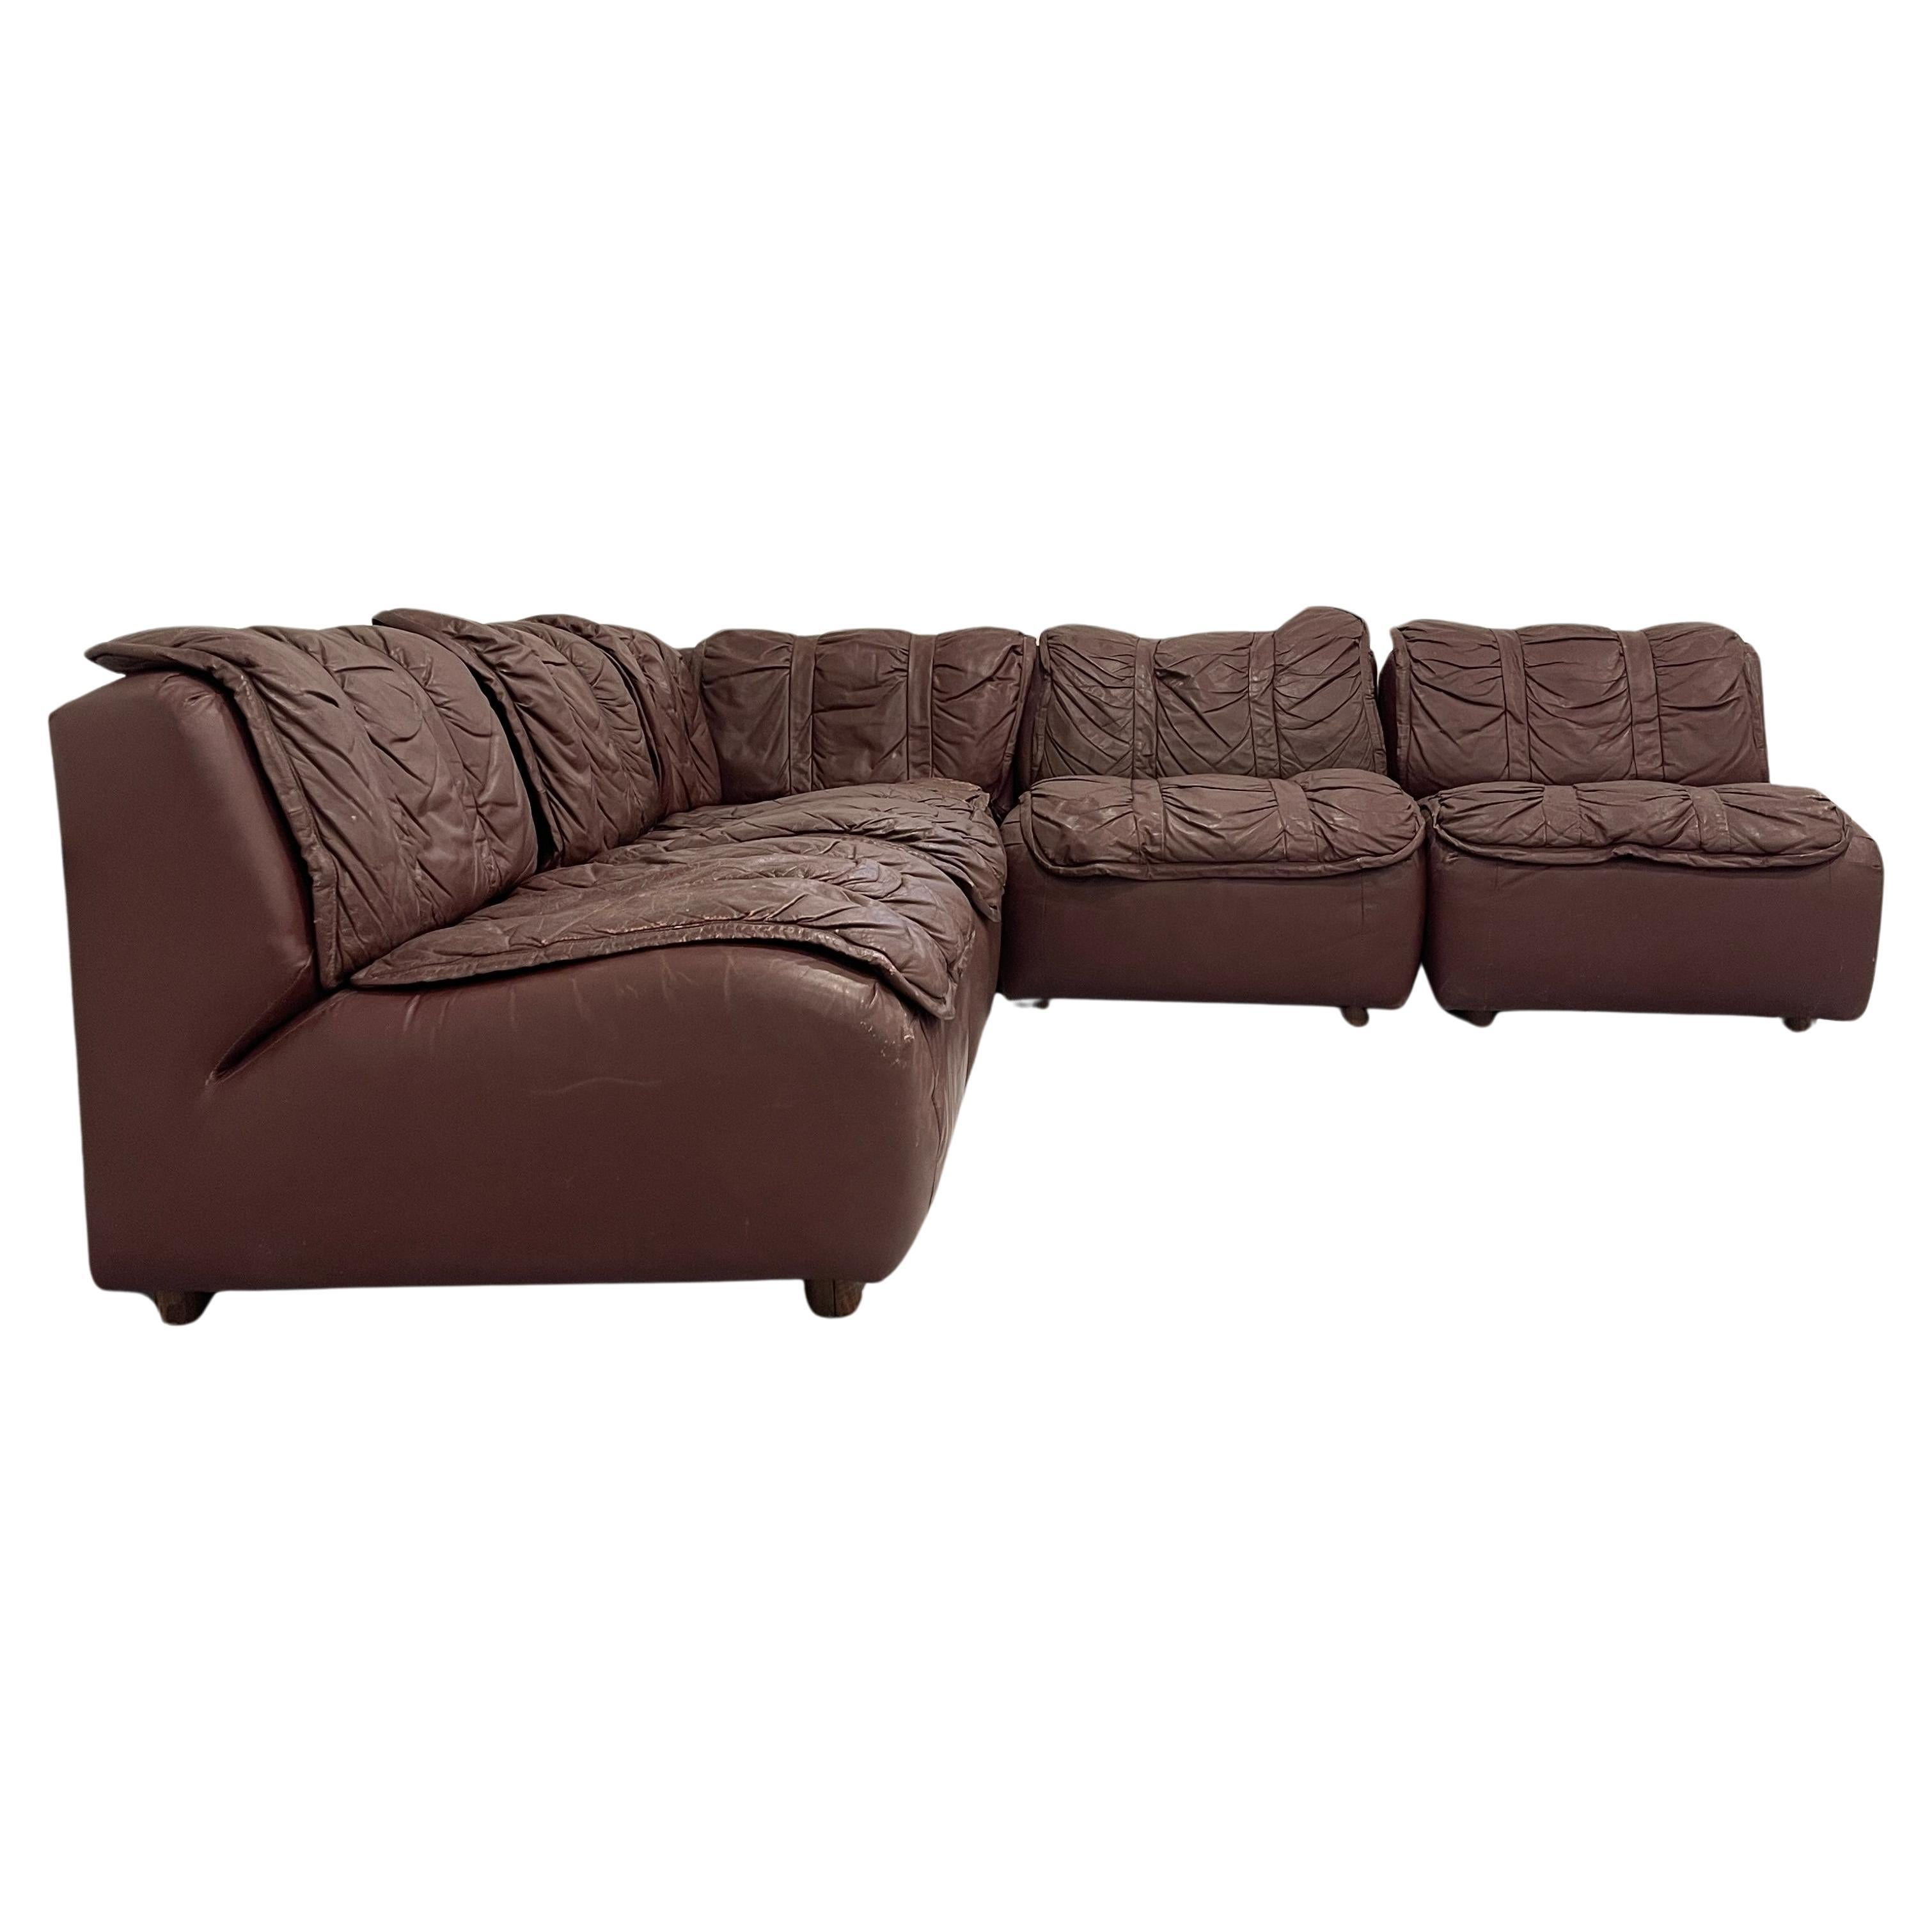 Glamuroso sofá seccional de los años 70 de cuero marrón patinado a la manera de DeSede